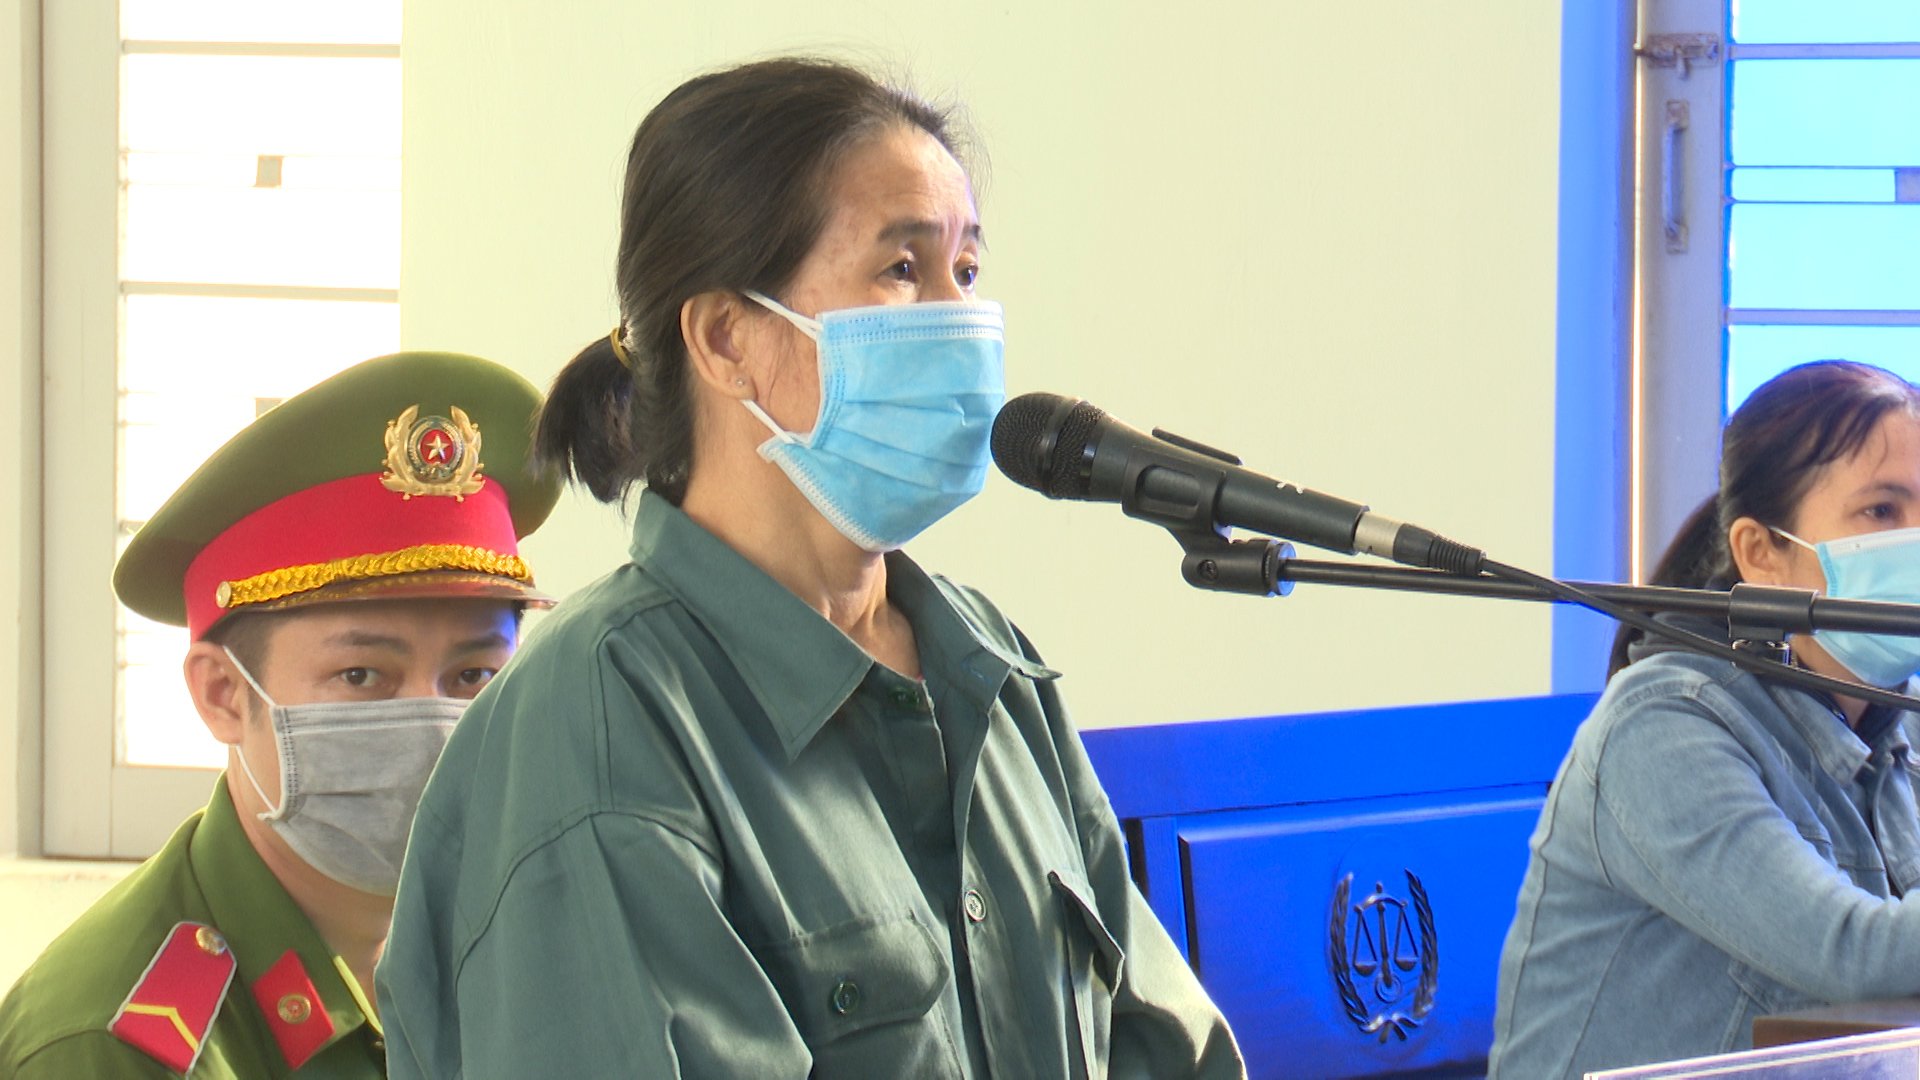 Nữ hung thủ giết người dã man, cướp tài sản ở Bình Thuận bị tuyên án chung thân - Ảnh 1.